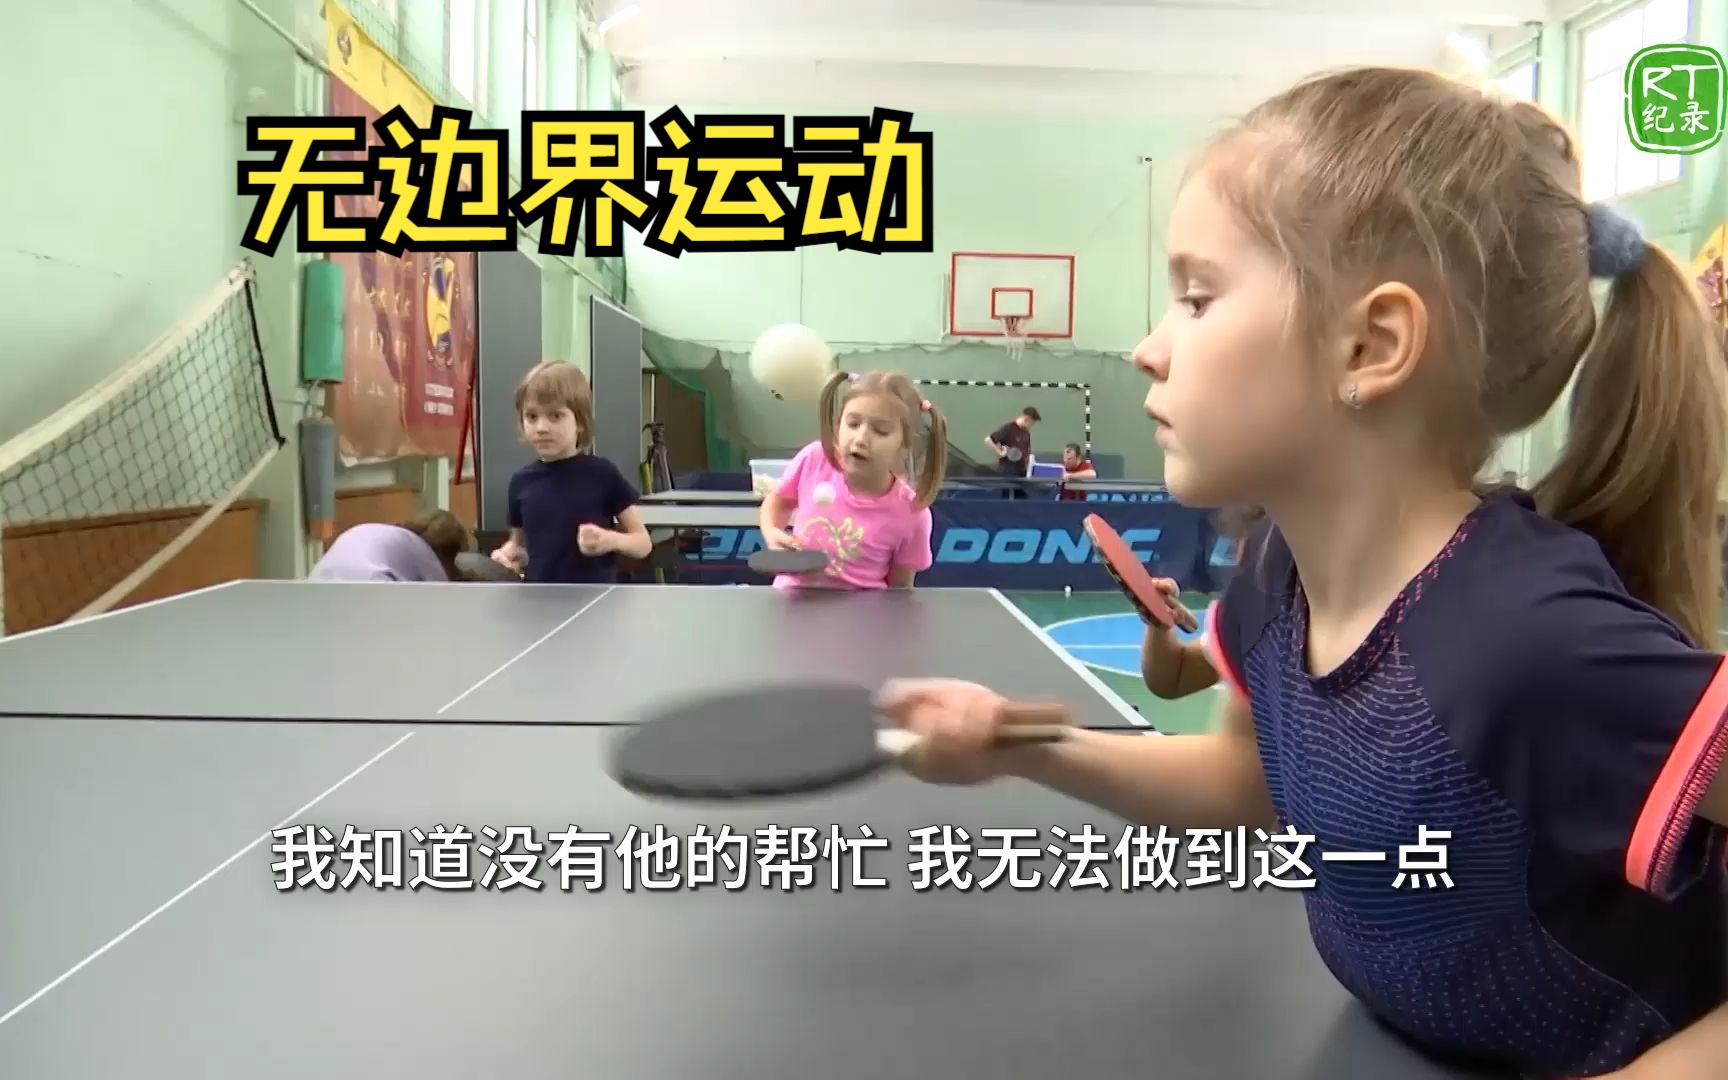 患有肢体病理性疾病的俄罗斯教练教孩子们打乒乓球